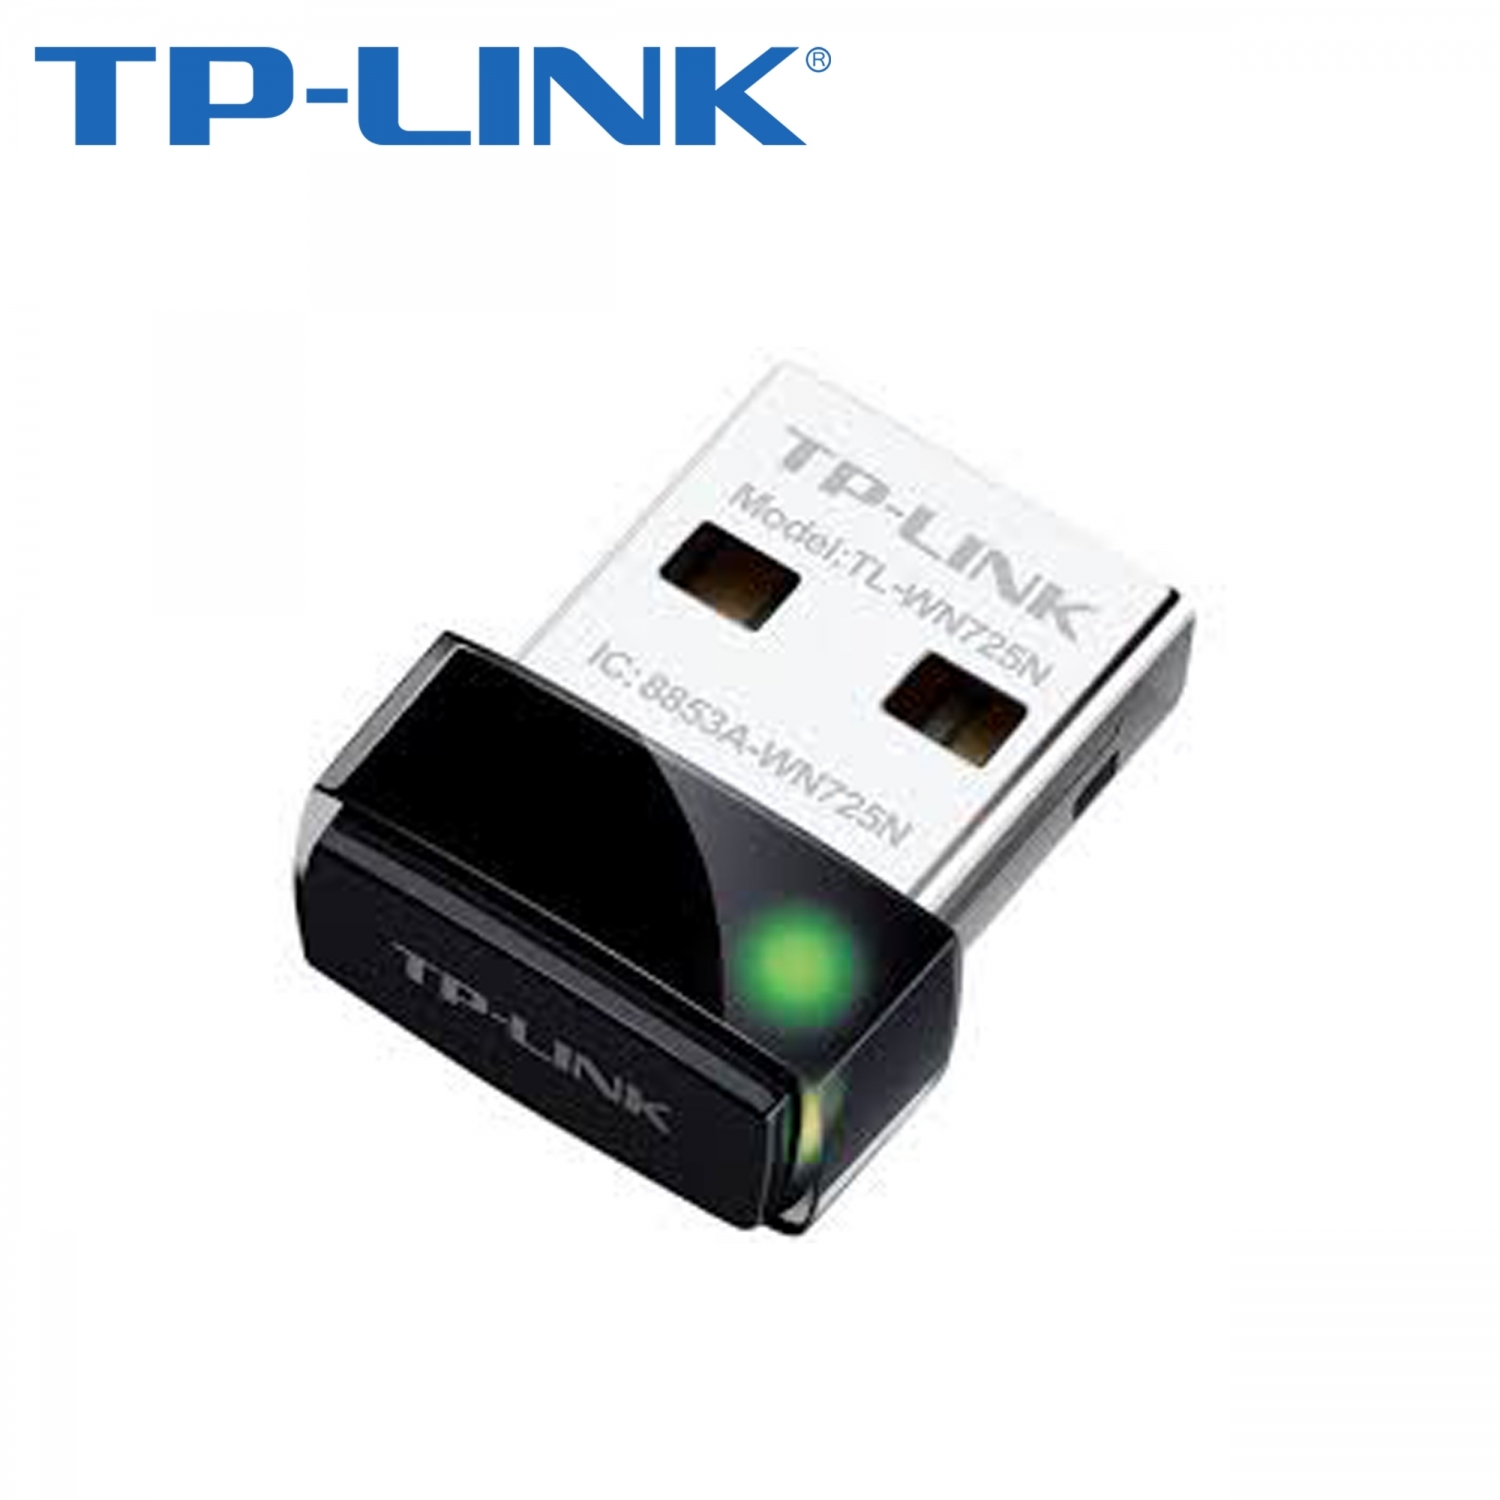 Сетевая карта TP-Link TL-WN725N (USB)